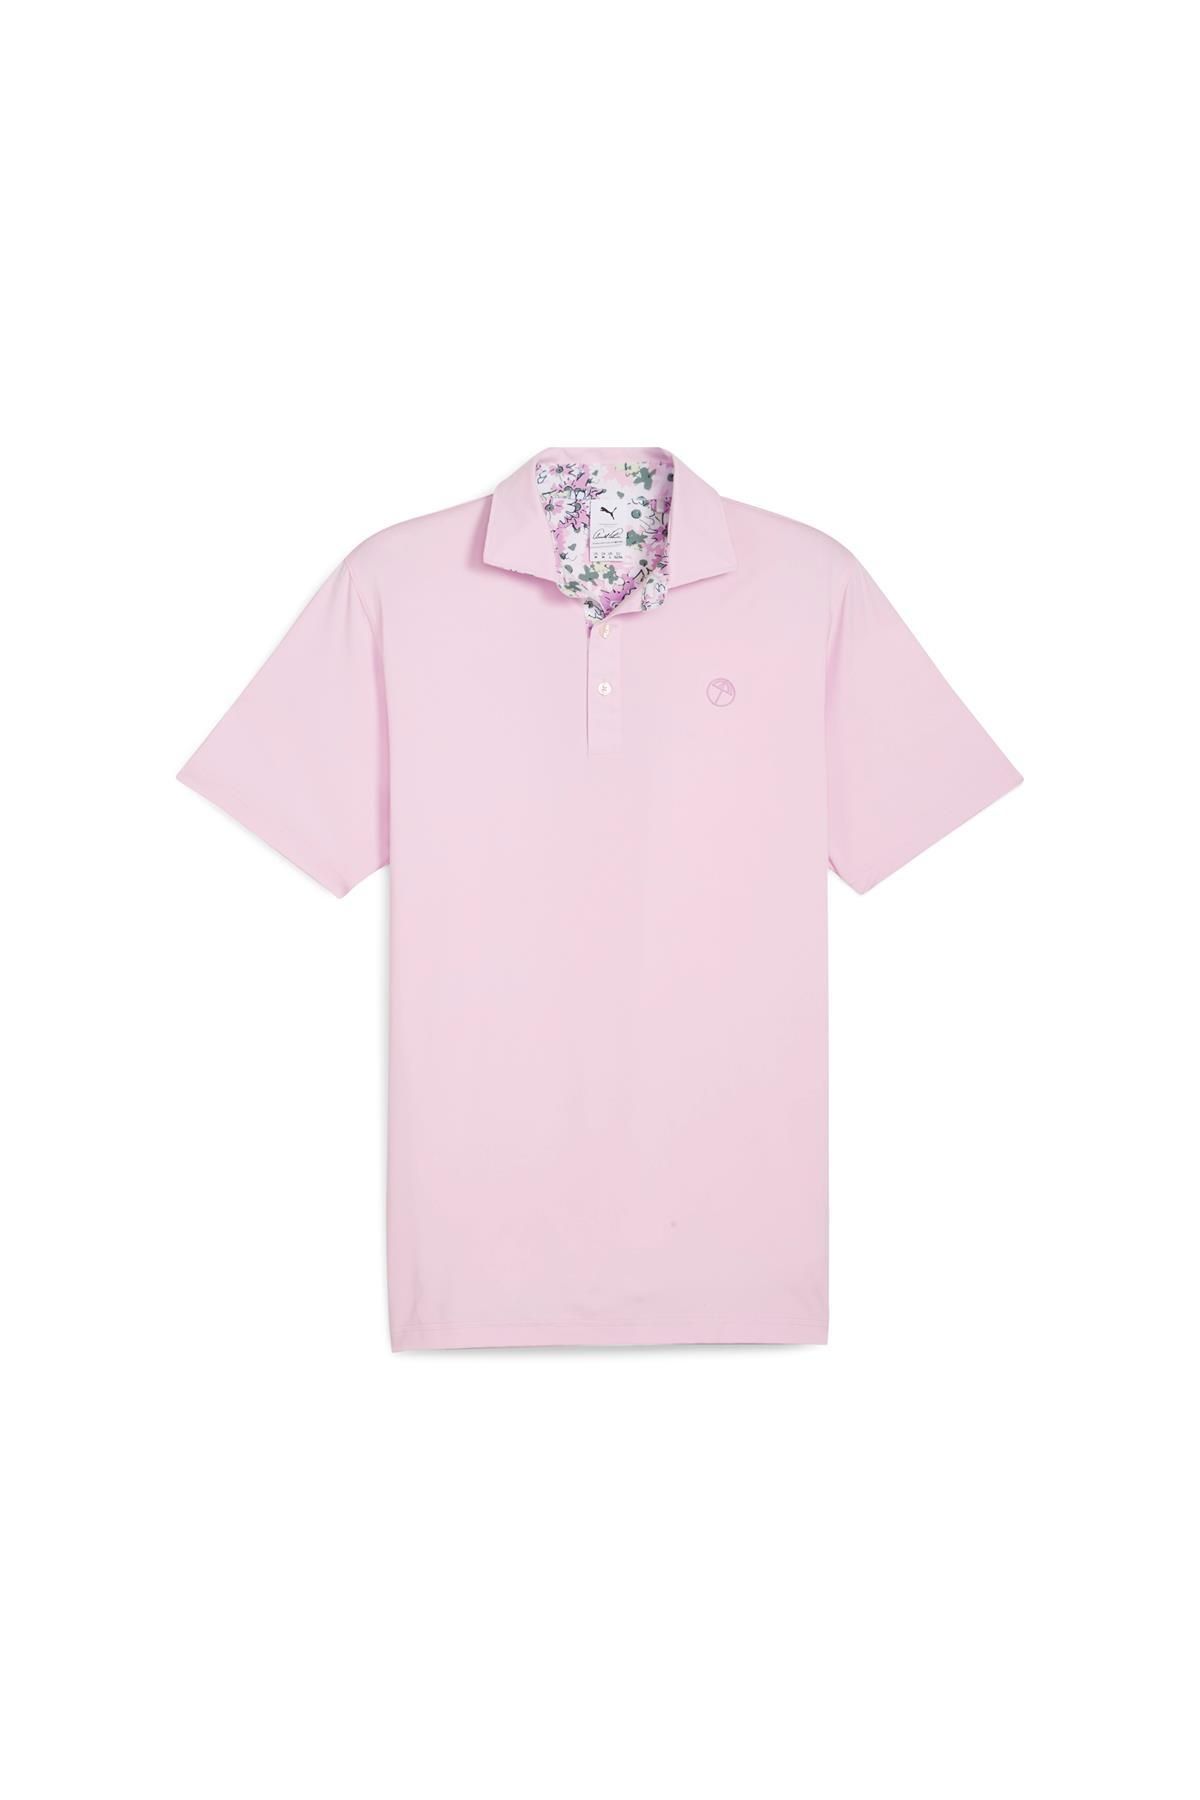 Puma AP Floral Trim Polo Tshirt / Erkek Golf Tshirt